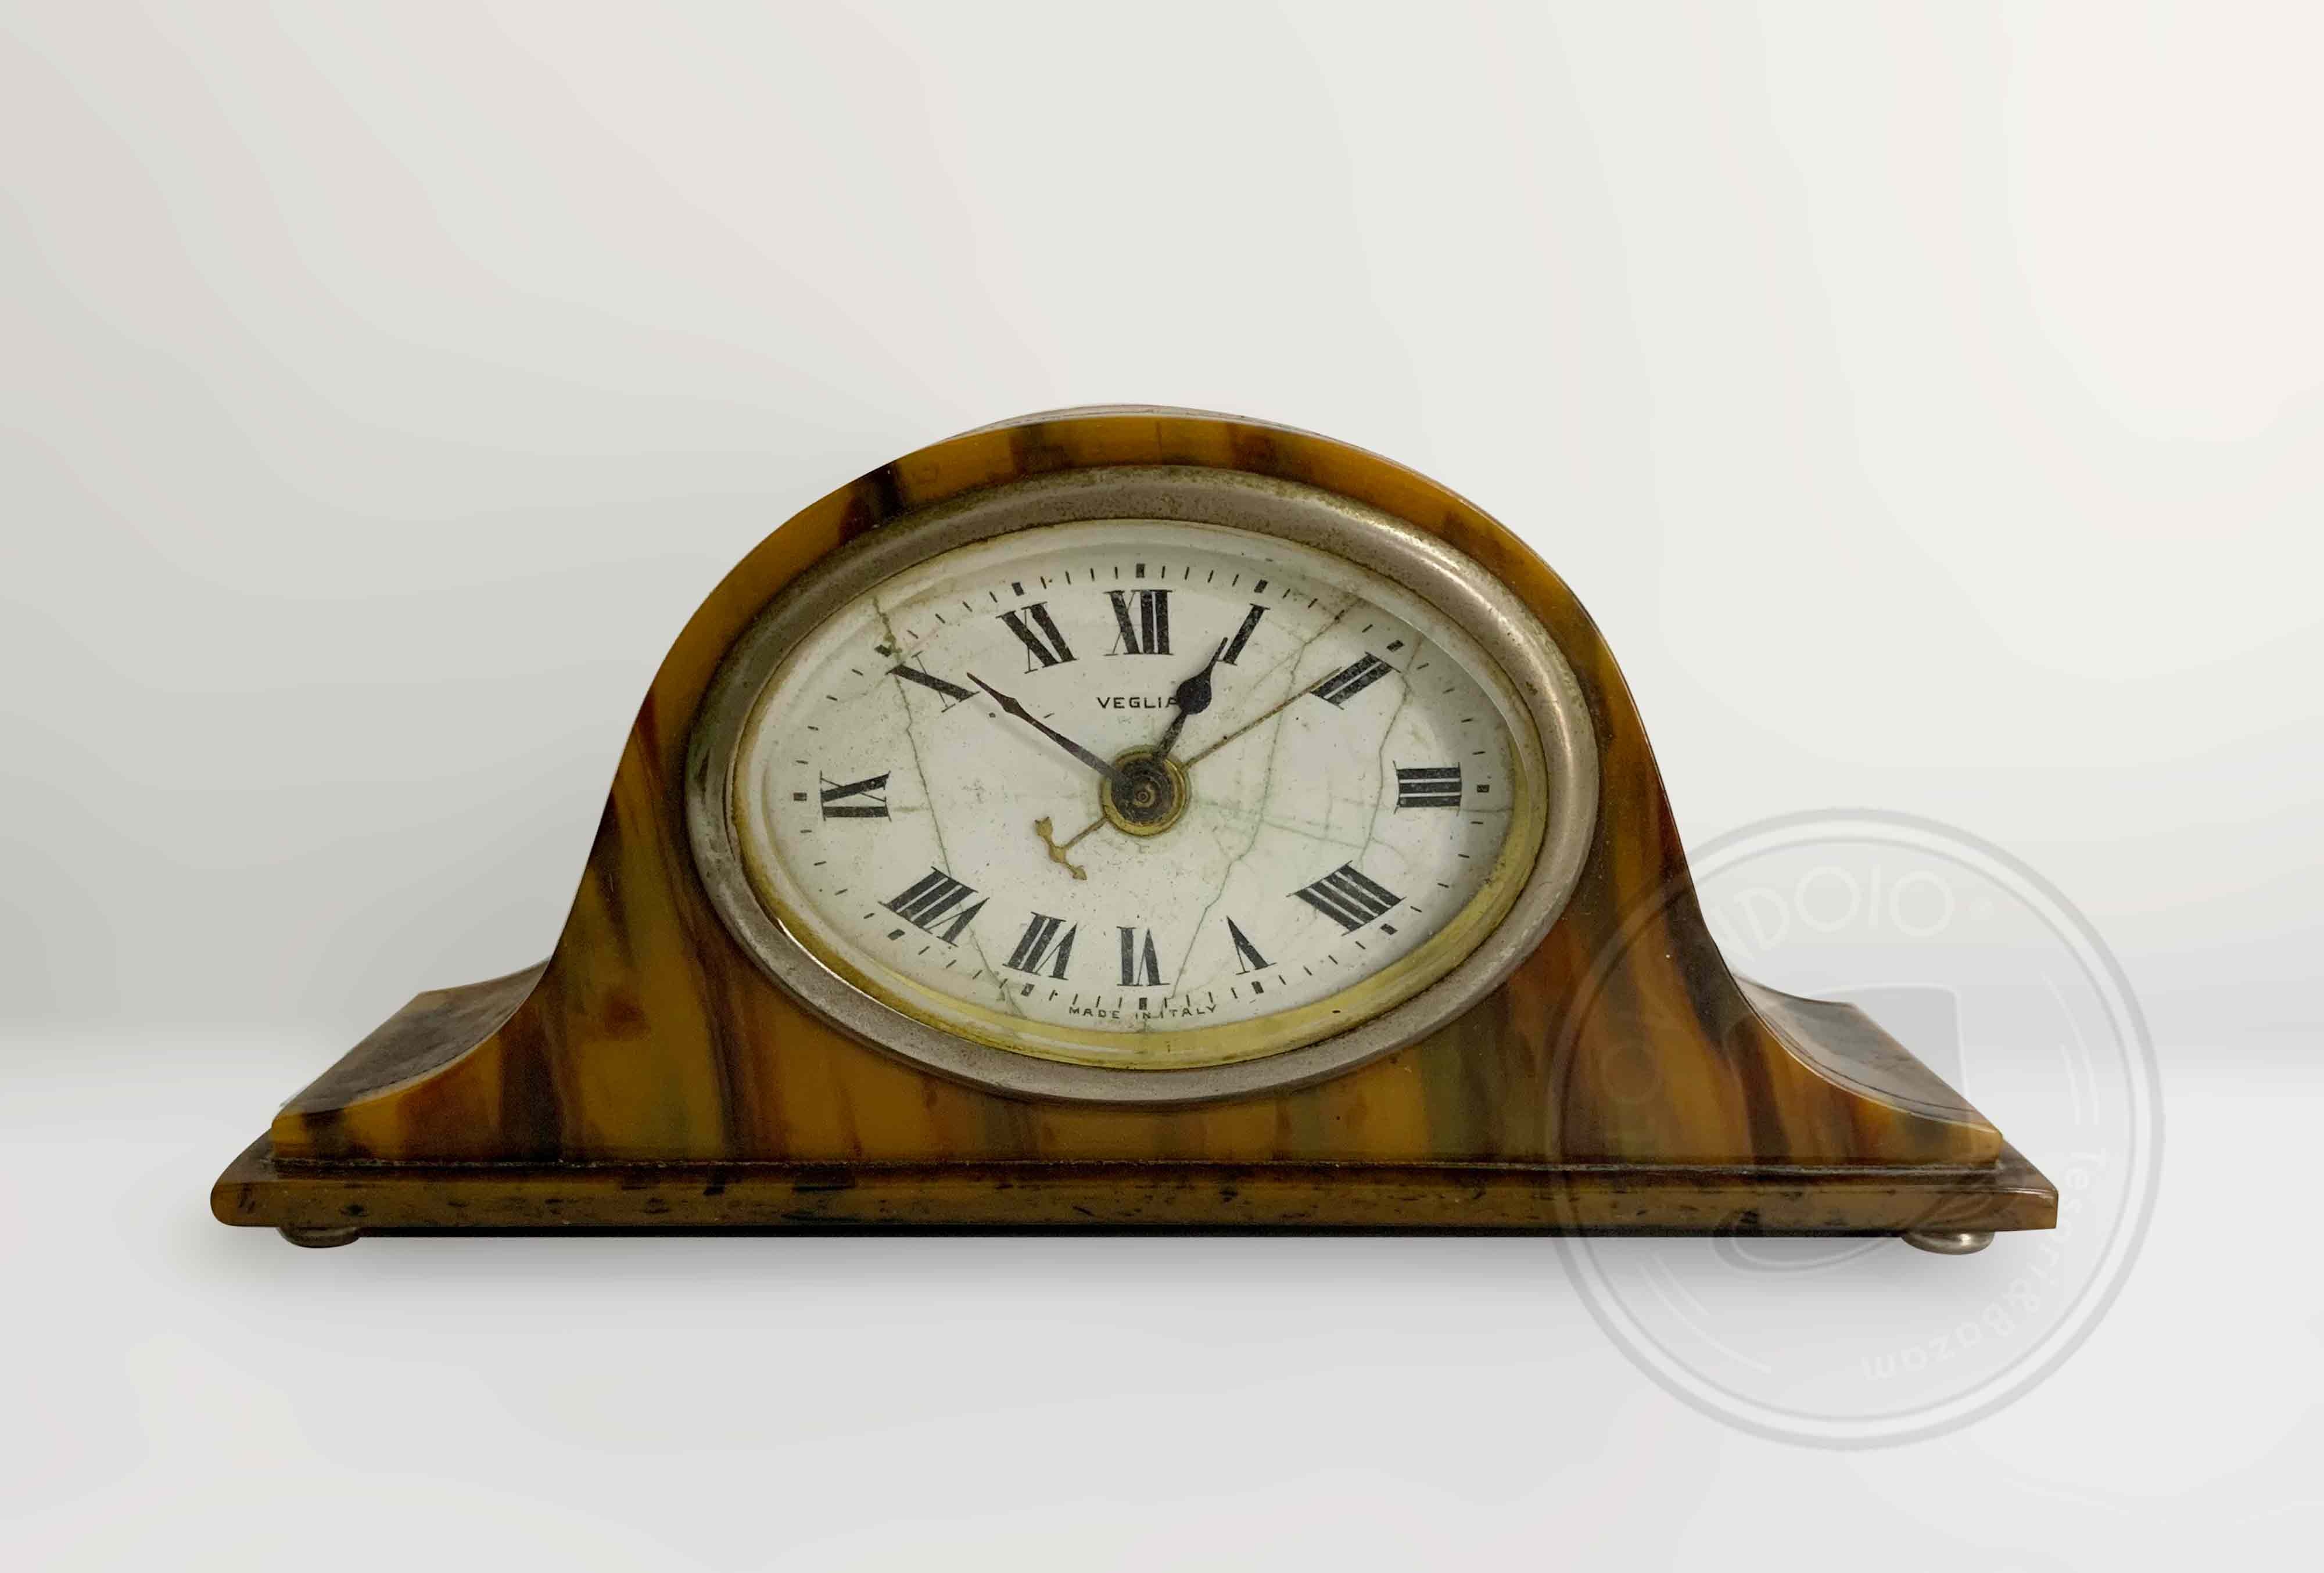 Orologio da tavolo Veglia anni 30 - TELOVENDOIO